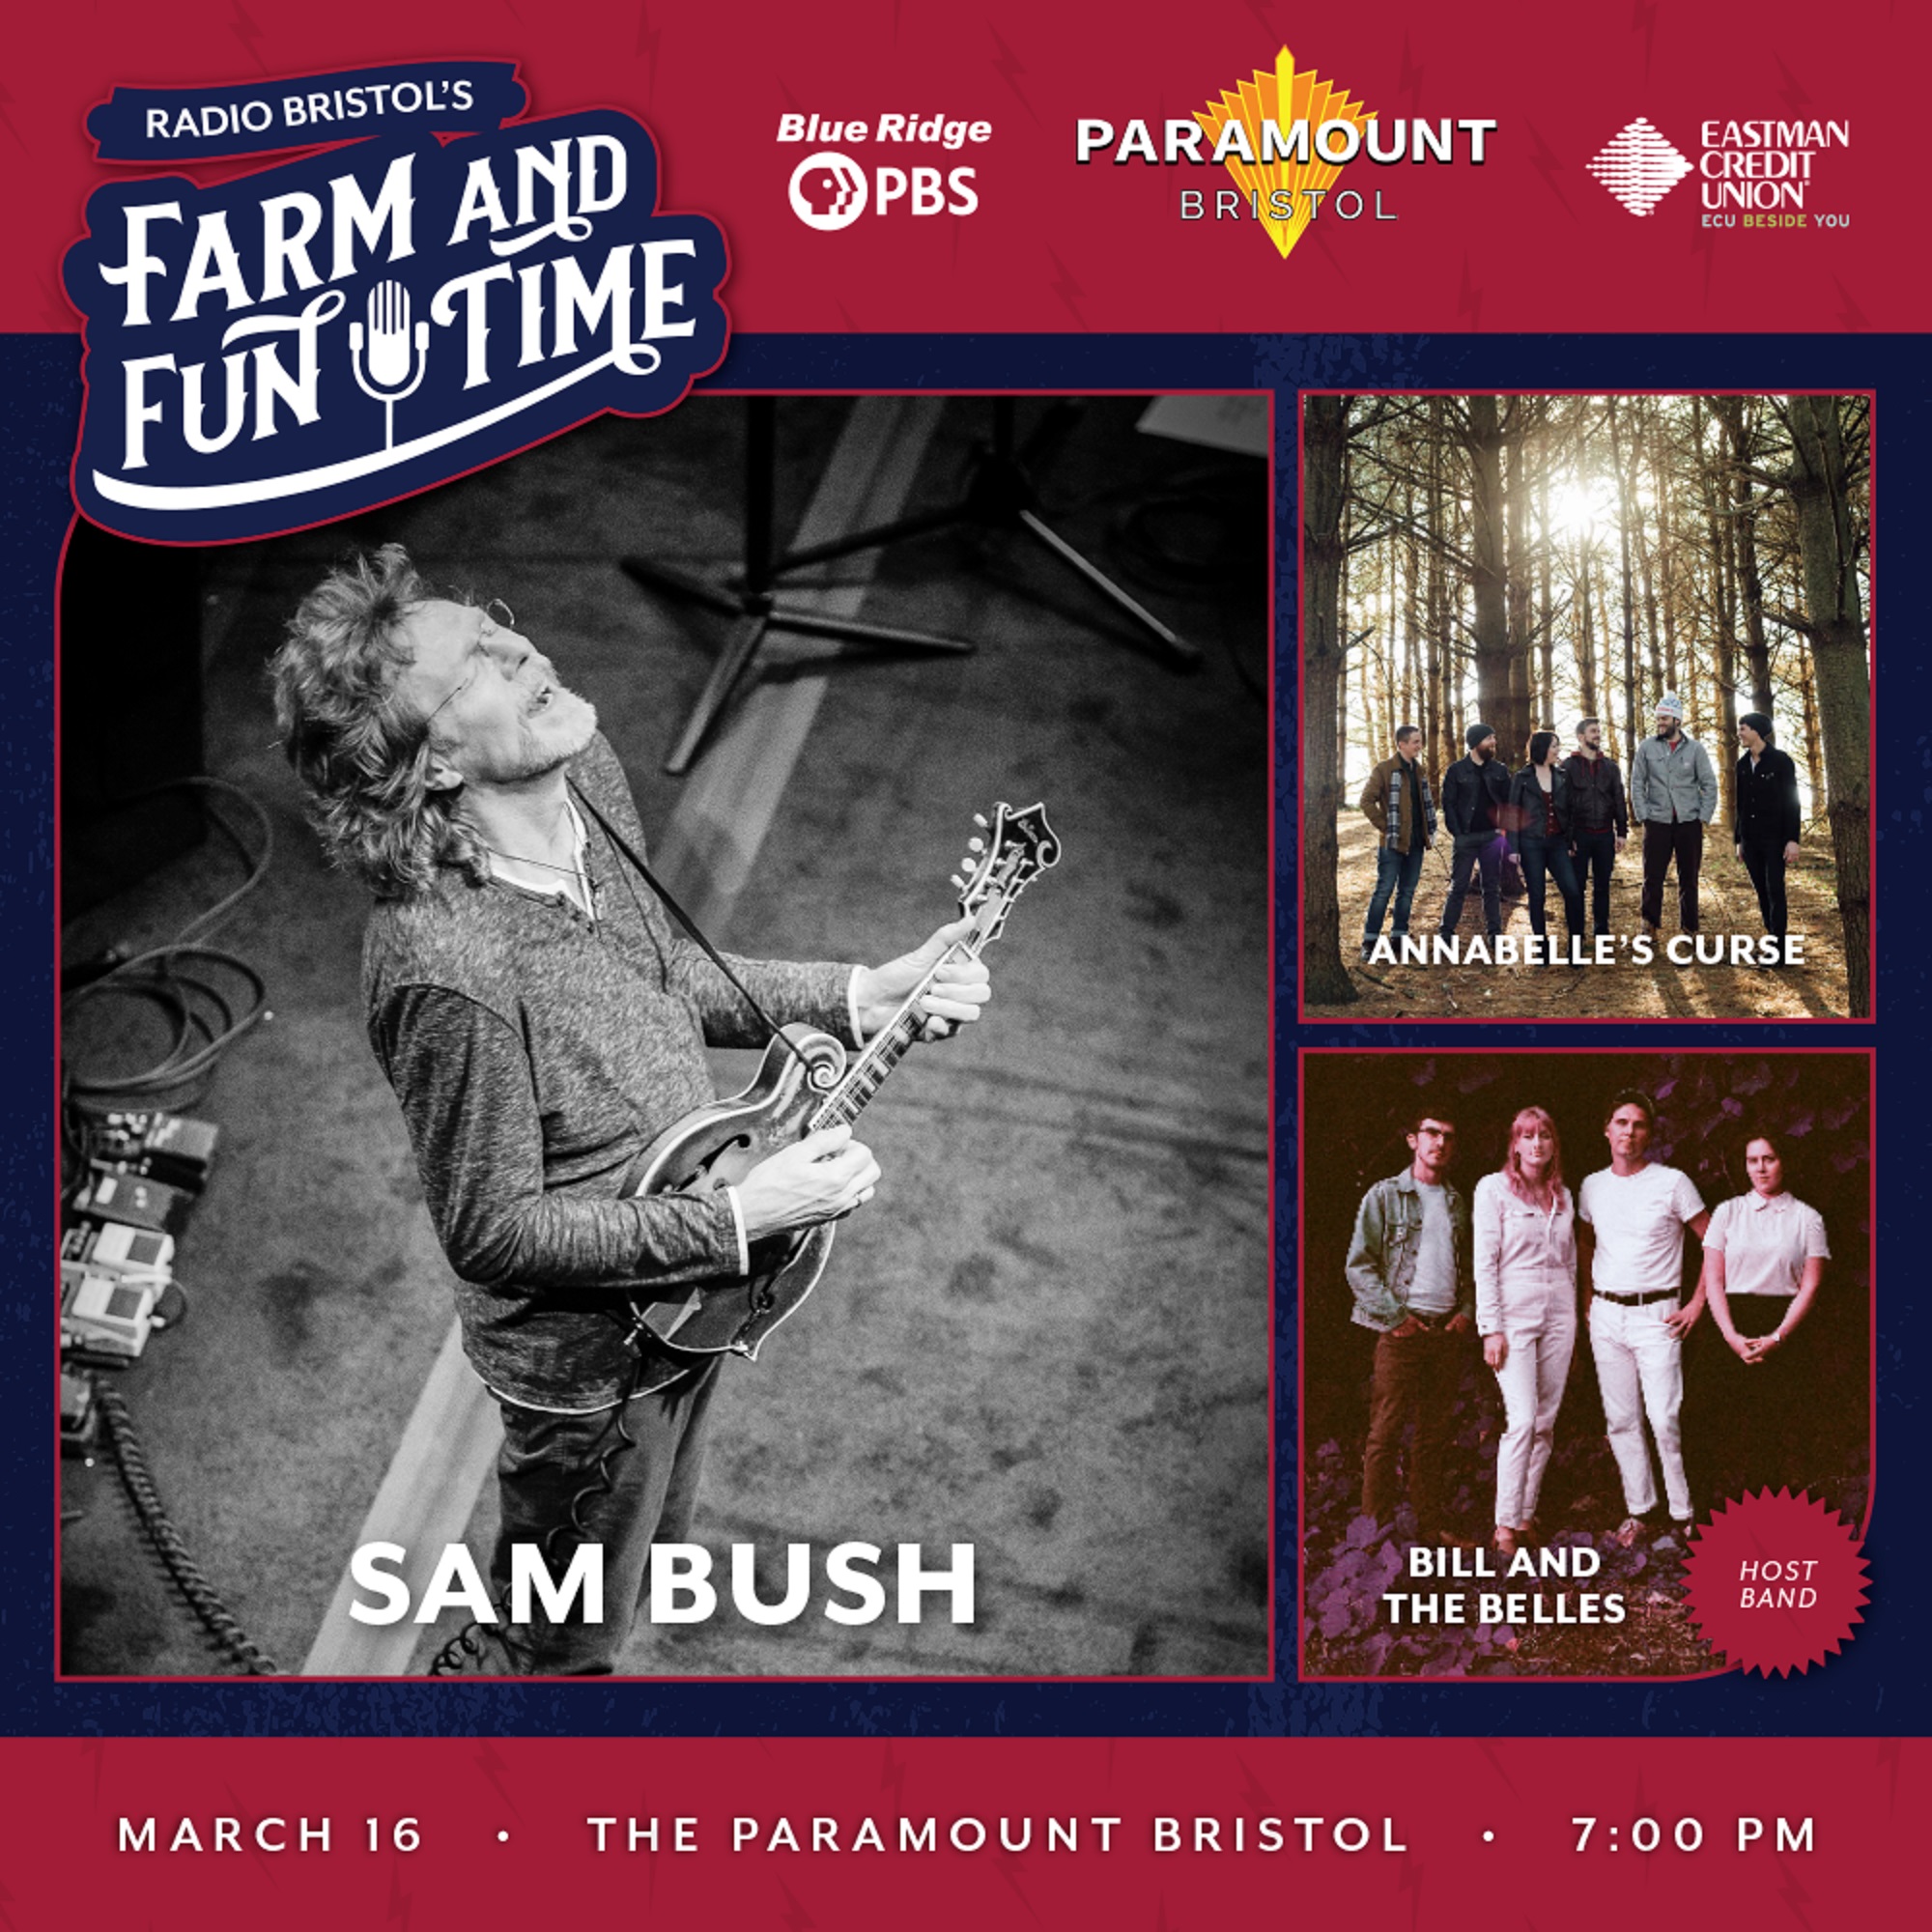 JUST ANNOUNCED: Sam Bush at Farm and Fun Time!